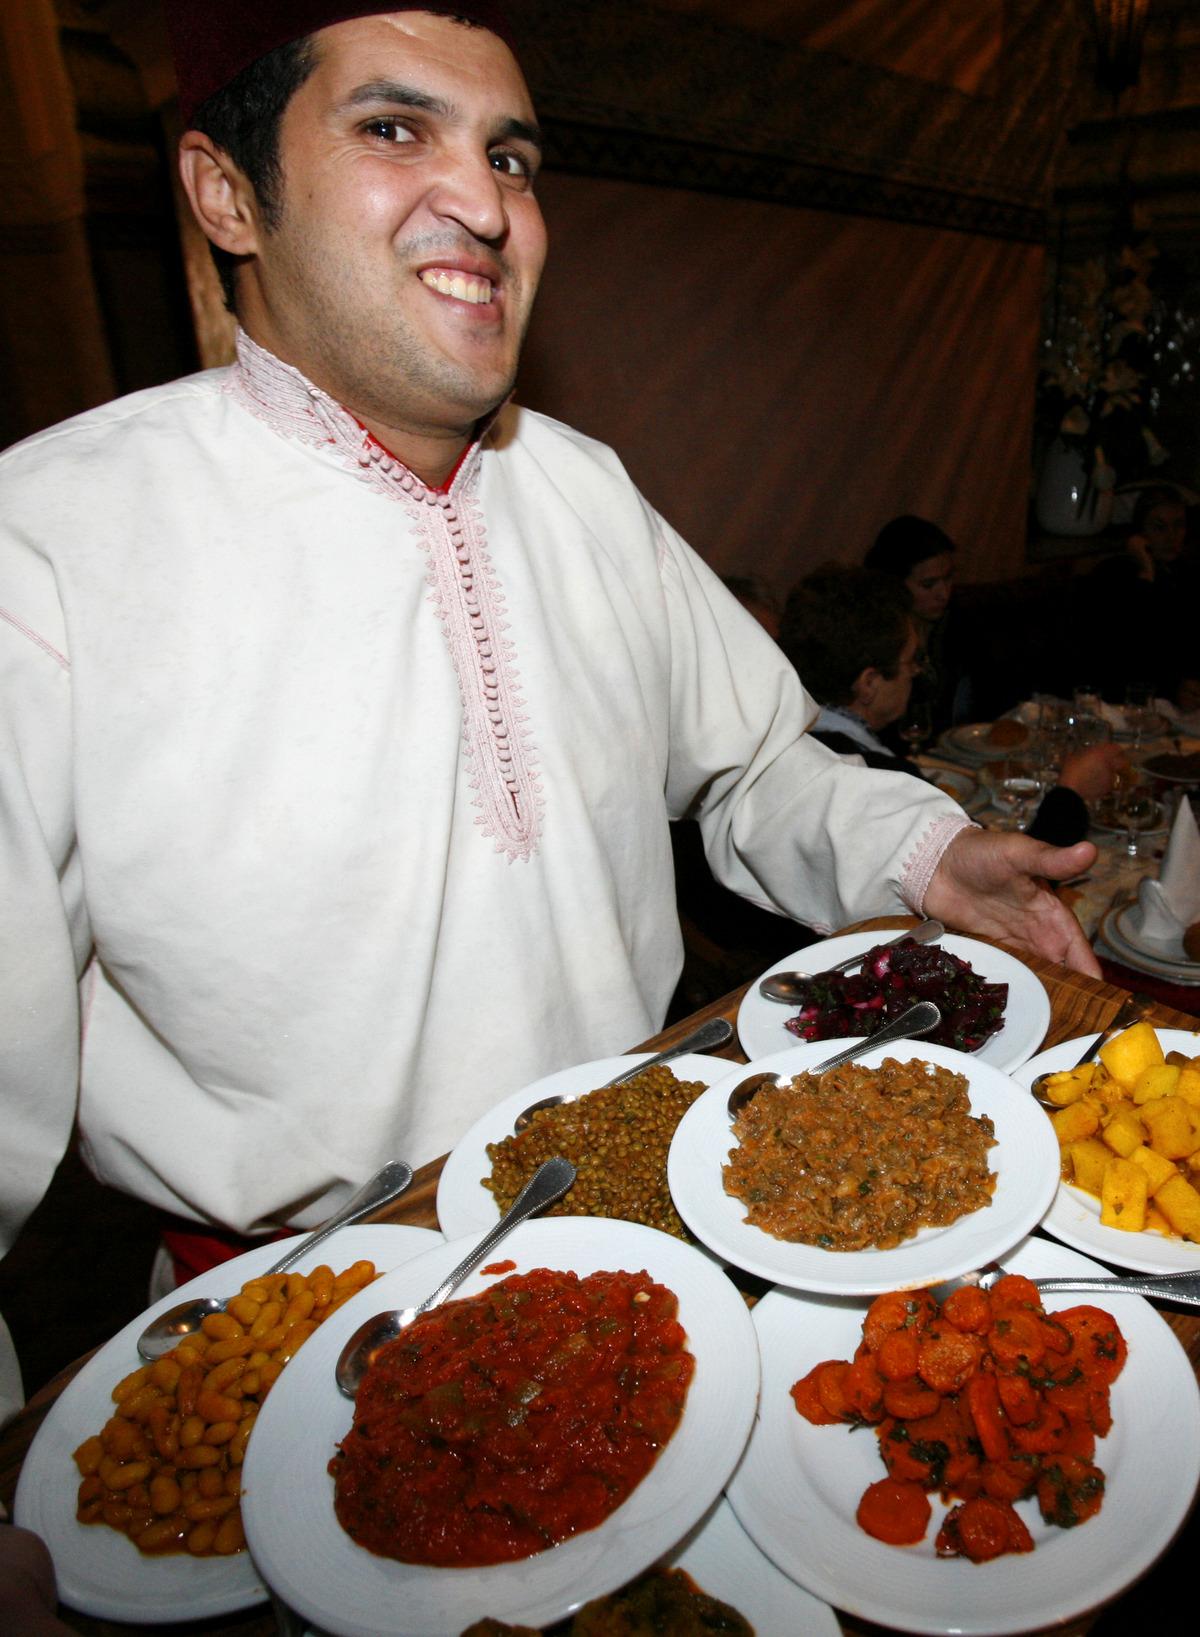 Du behöver aldrig gå hungrig från mysiga restaurangen Ksar El Hamra.